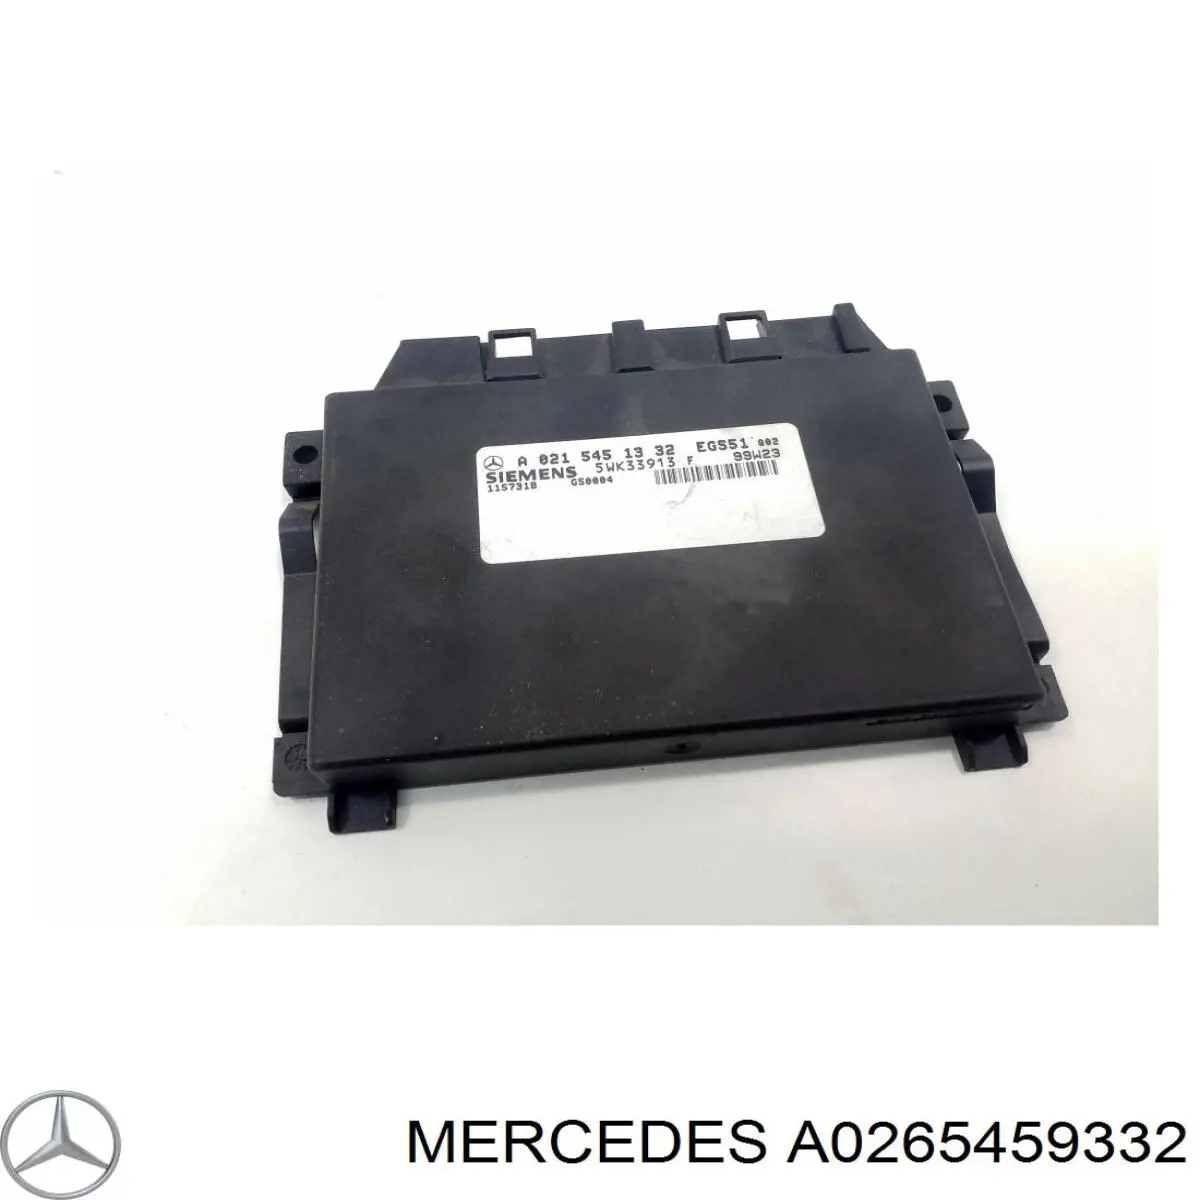 A0265459332 Mercedes modulo de control electronico (ecu)